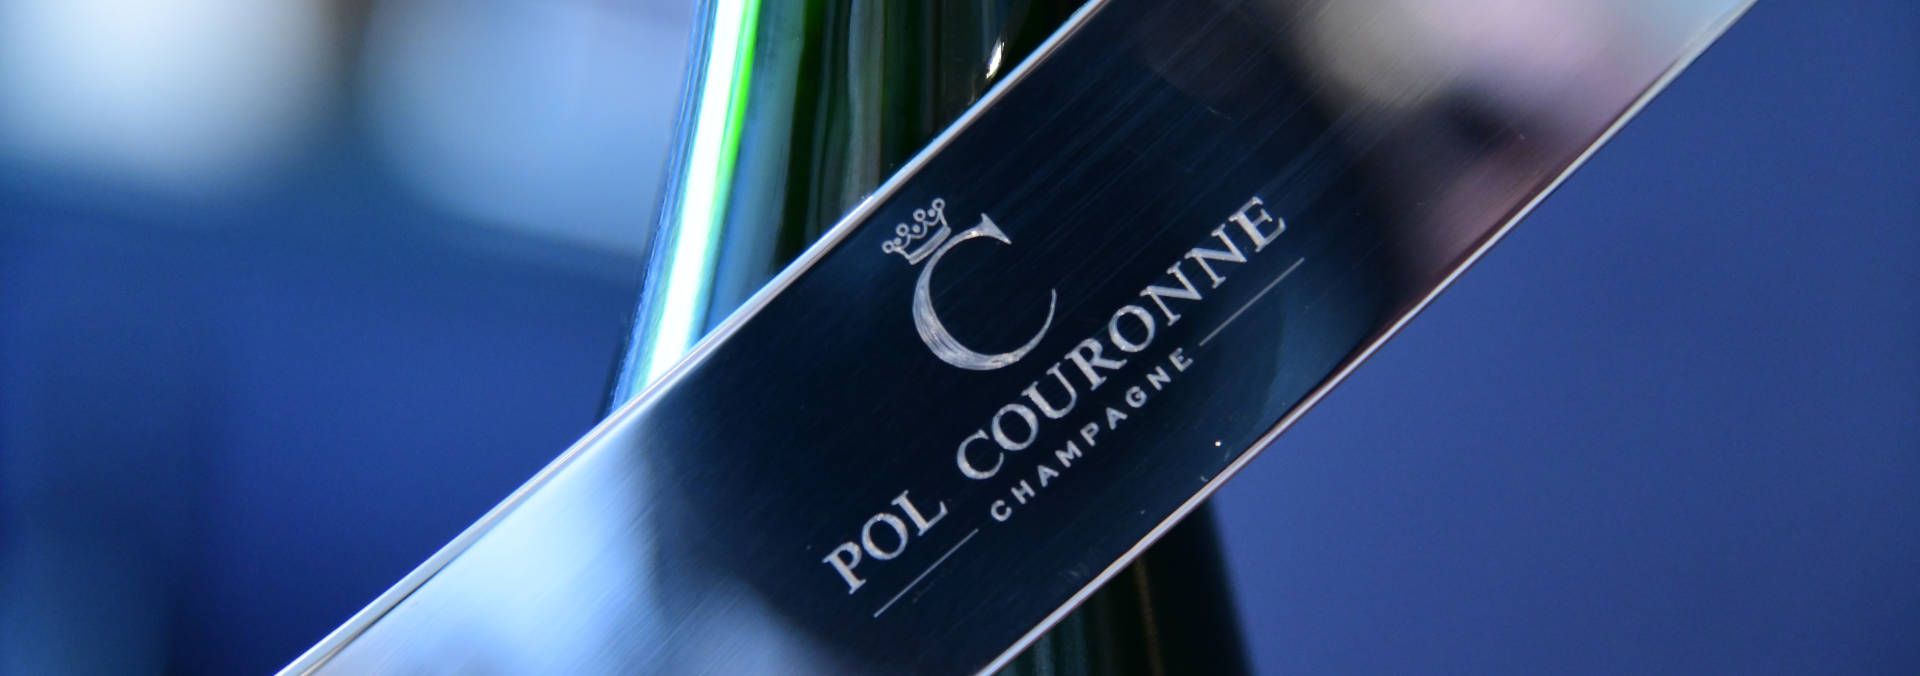 Champagne Pol Couronne - Rue des Vignerons